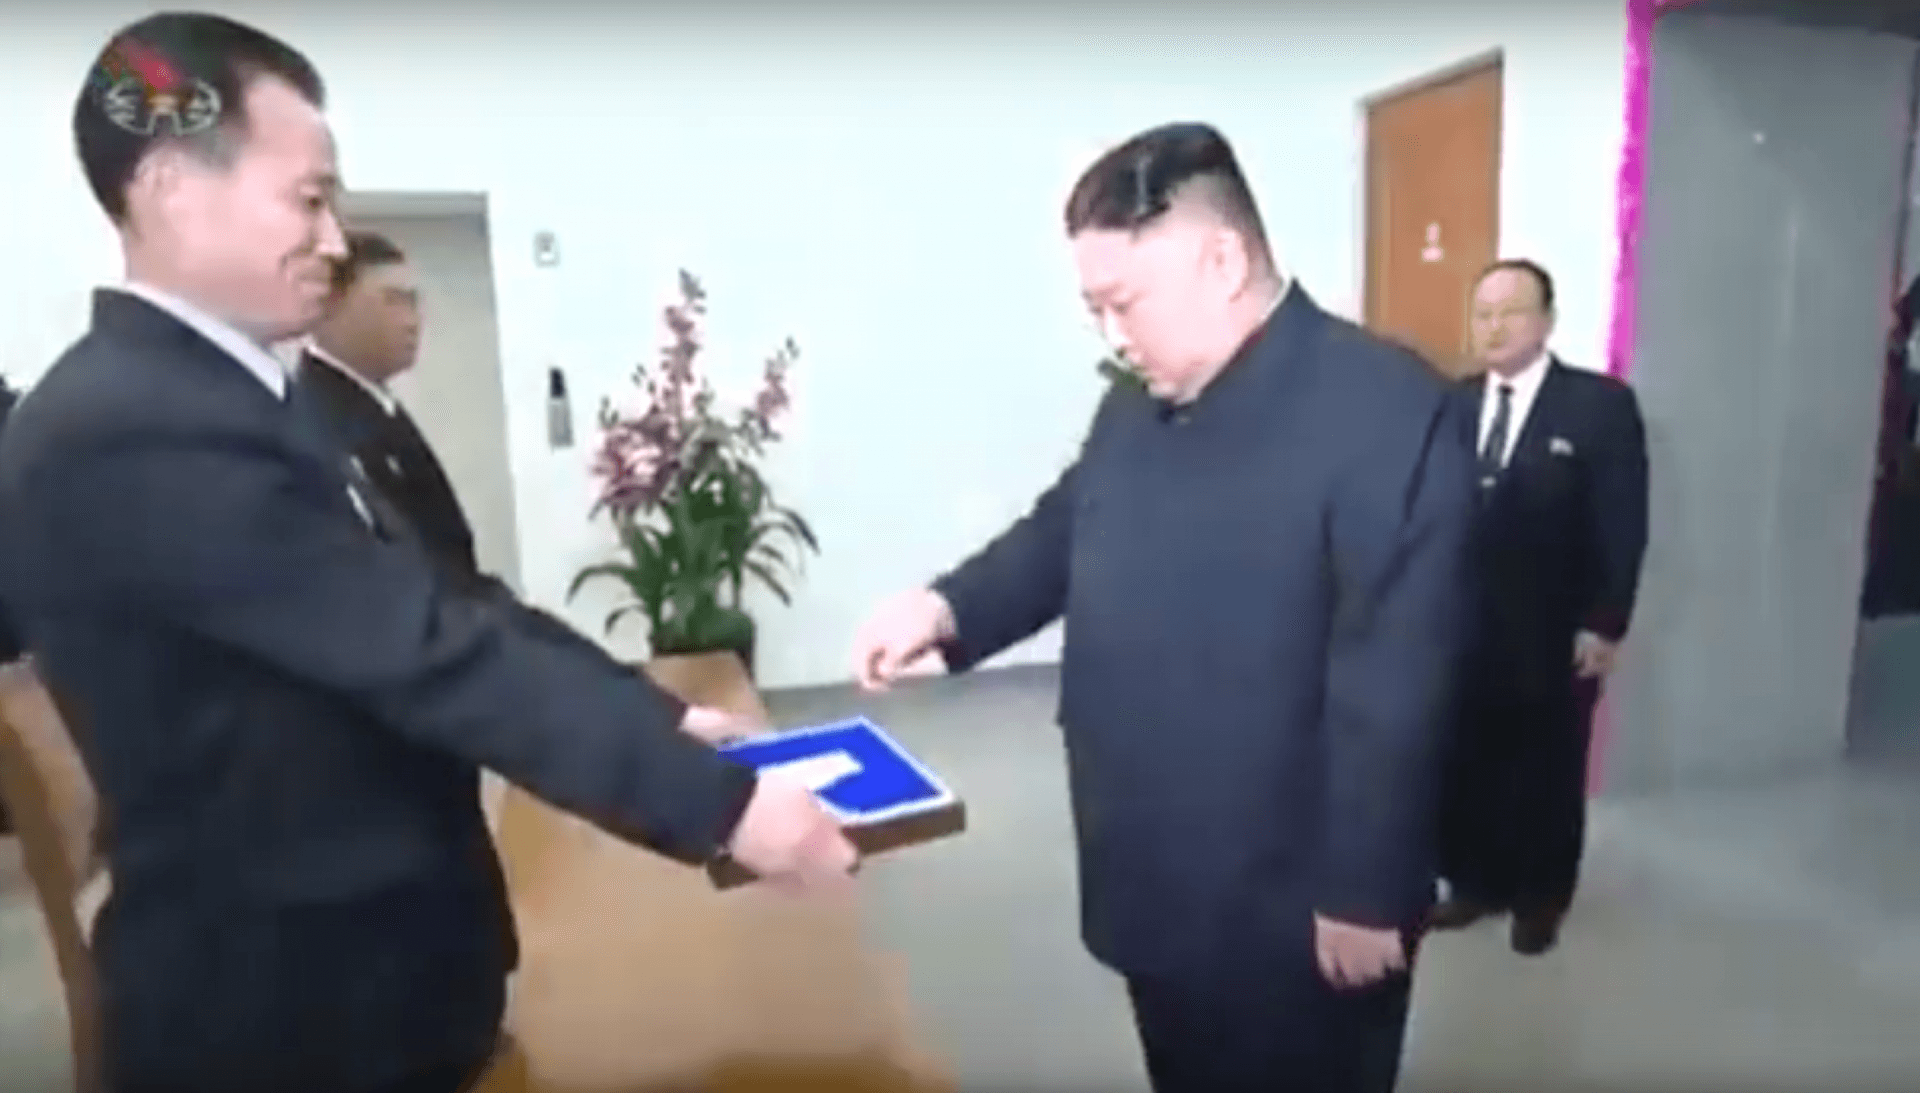 Kim Jong-un receives his ballot